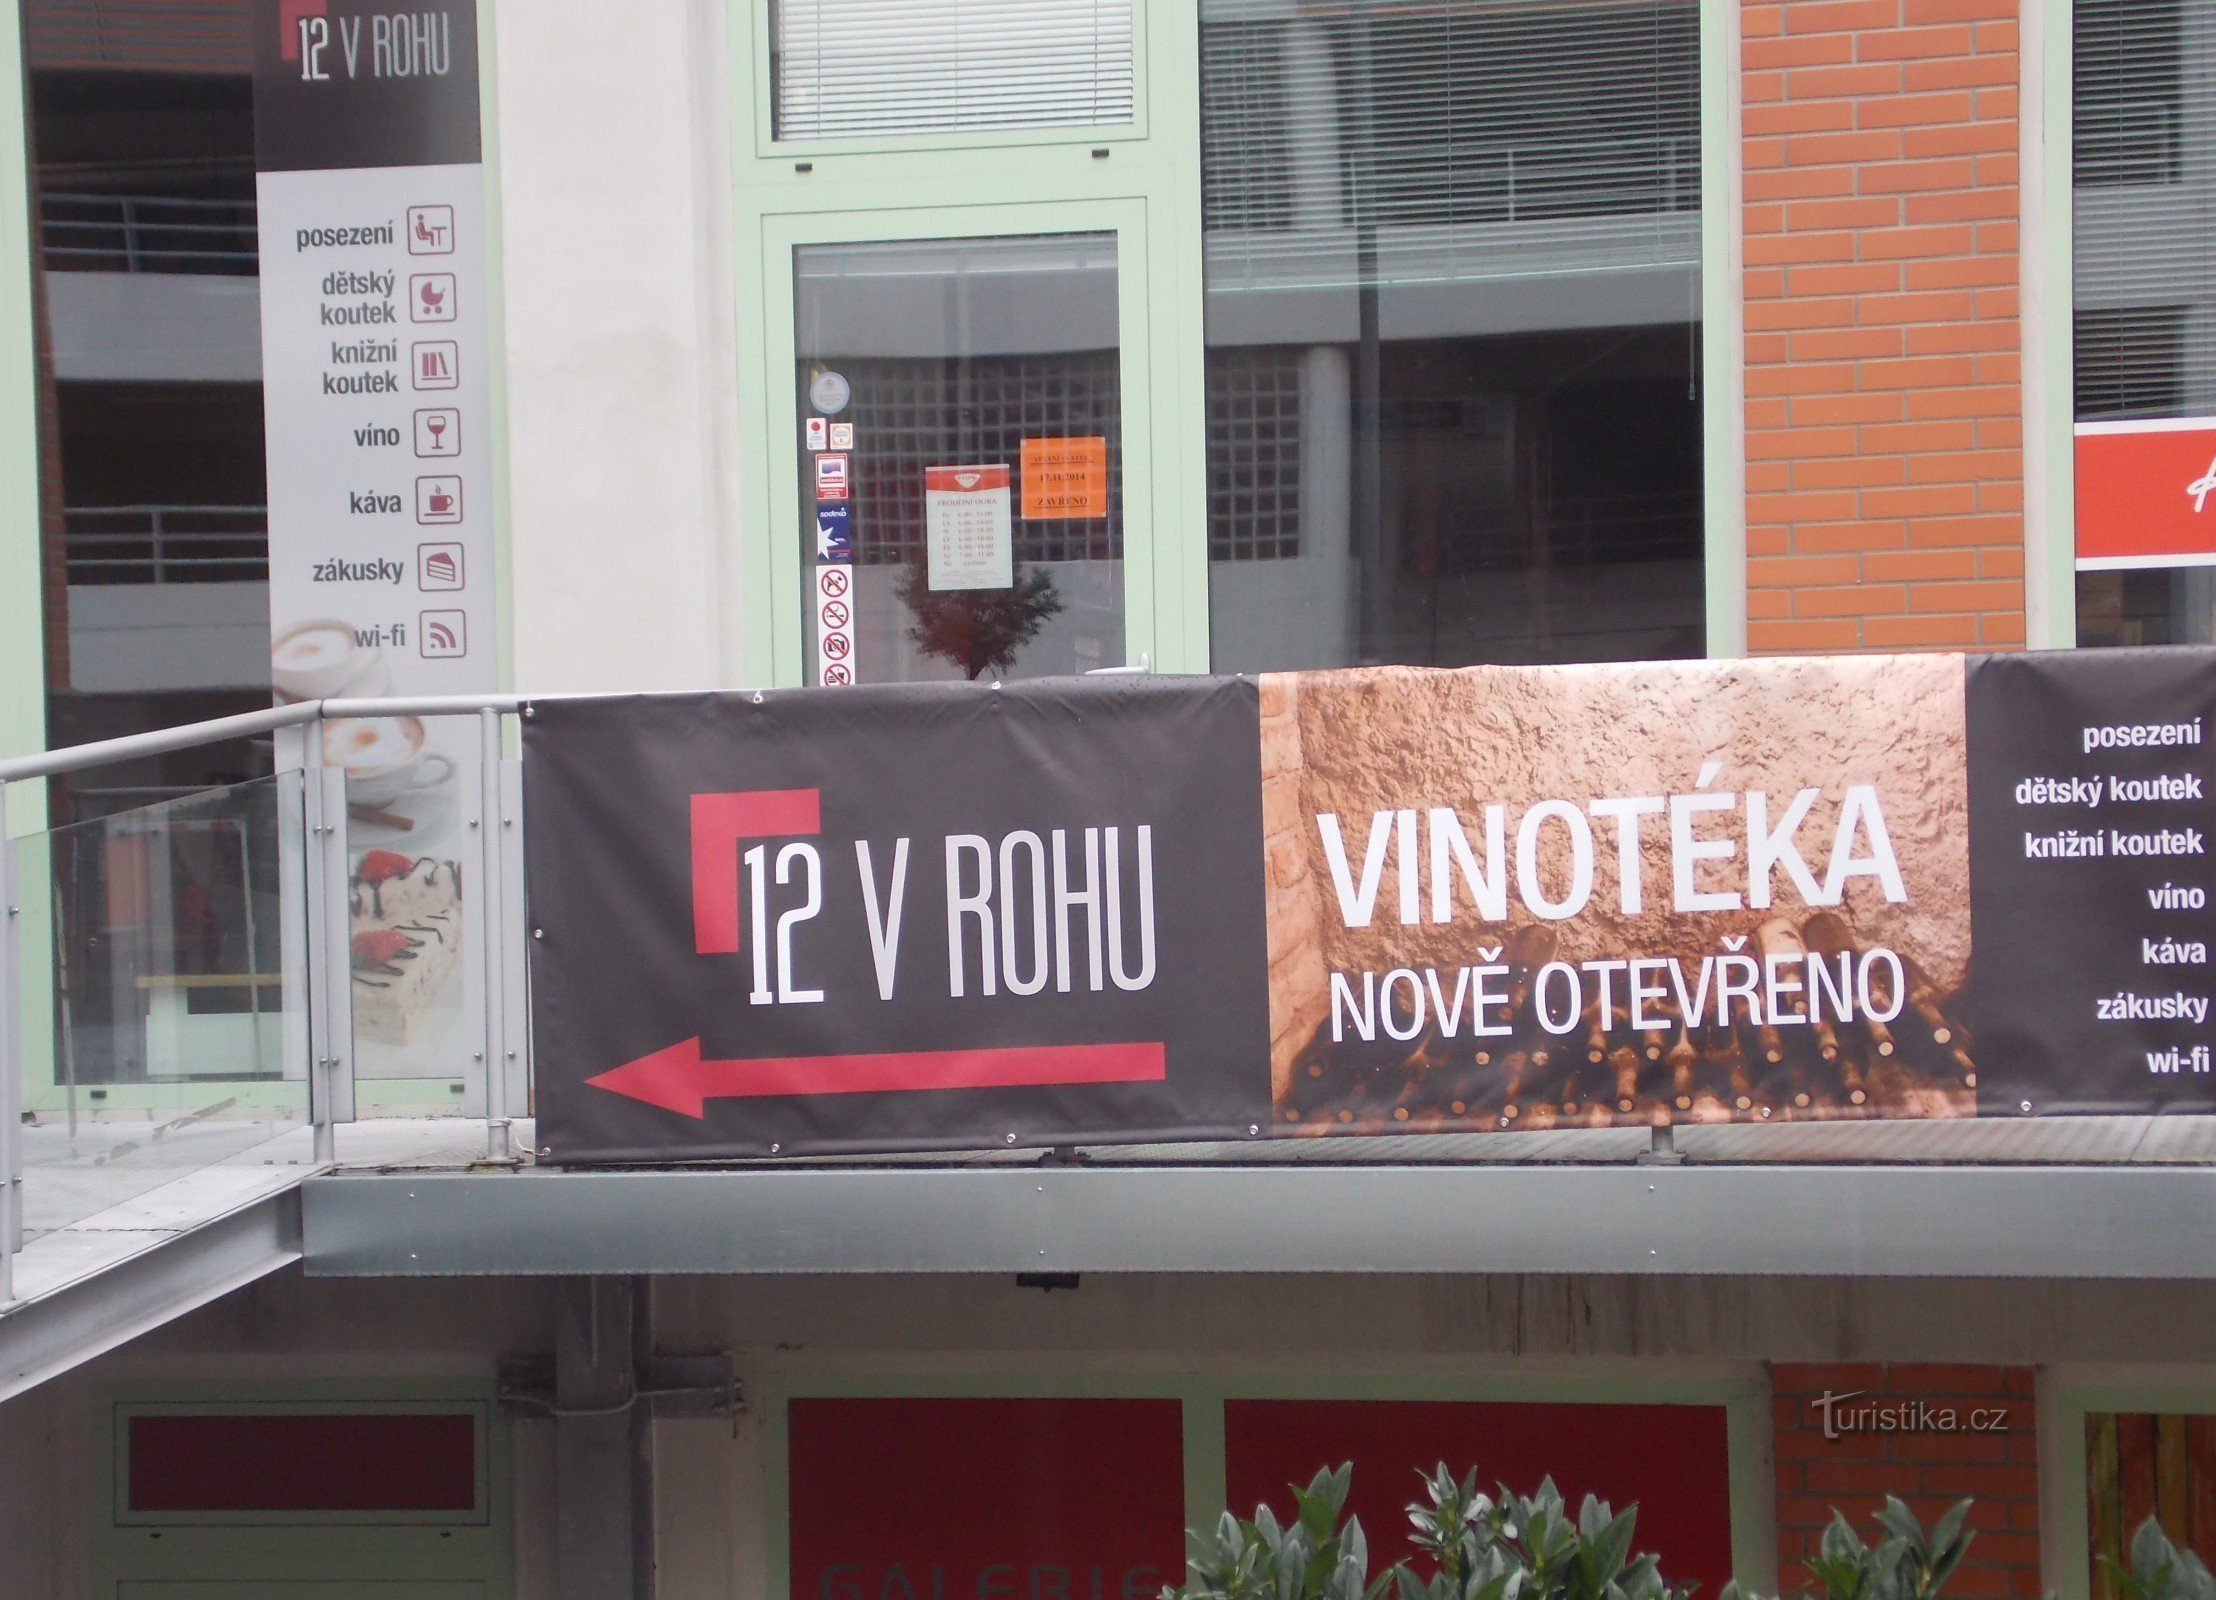 Vinoteka 12 in der Ecke - Stadtteil Svit, Zlín